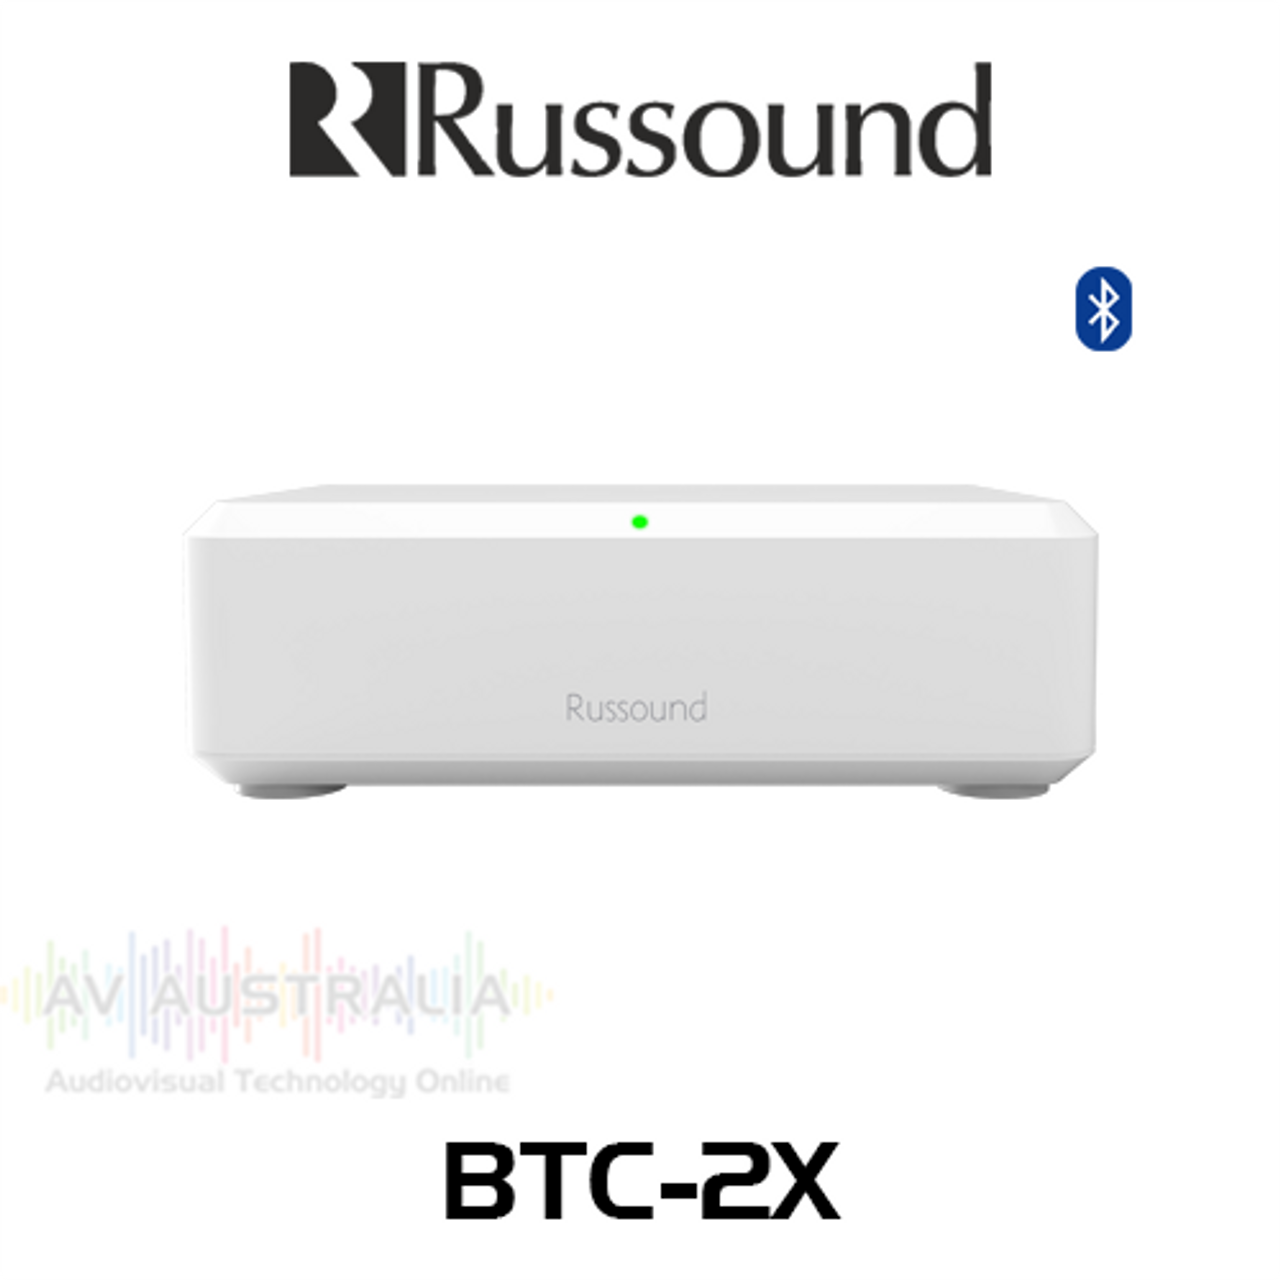 Russound BTC-2X Bluetooth Remote Transceiver